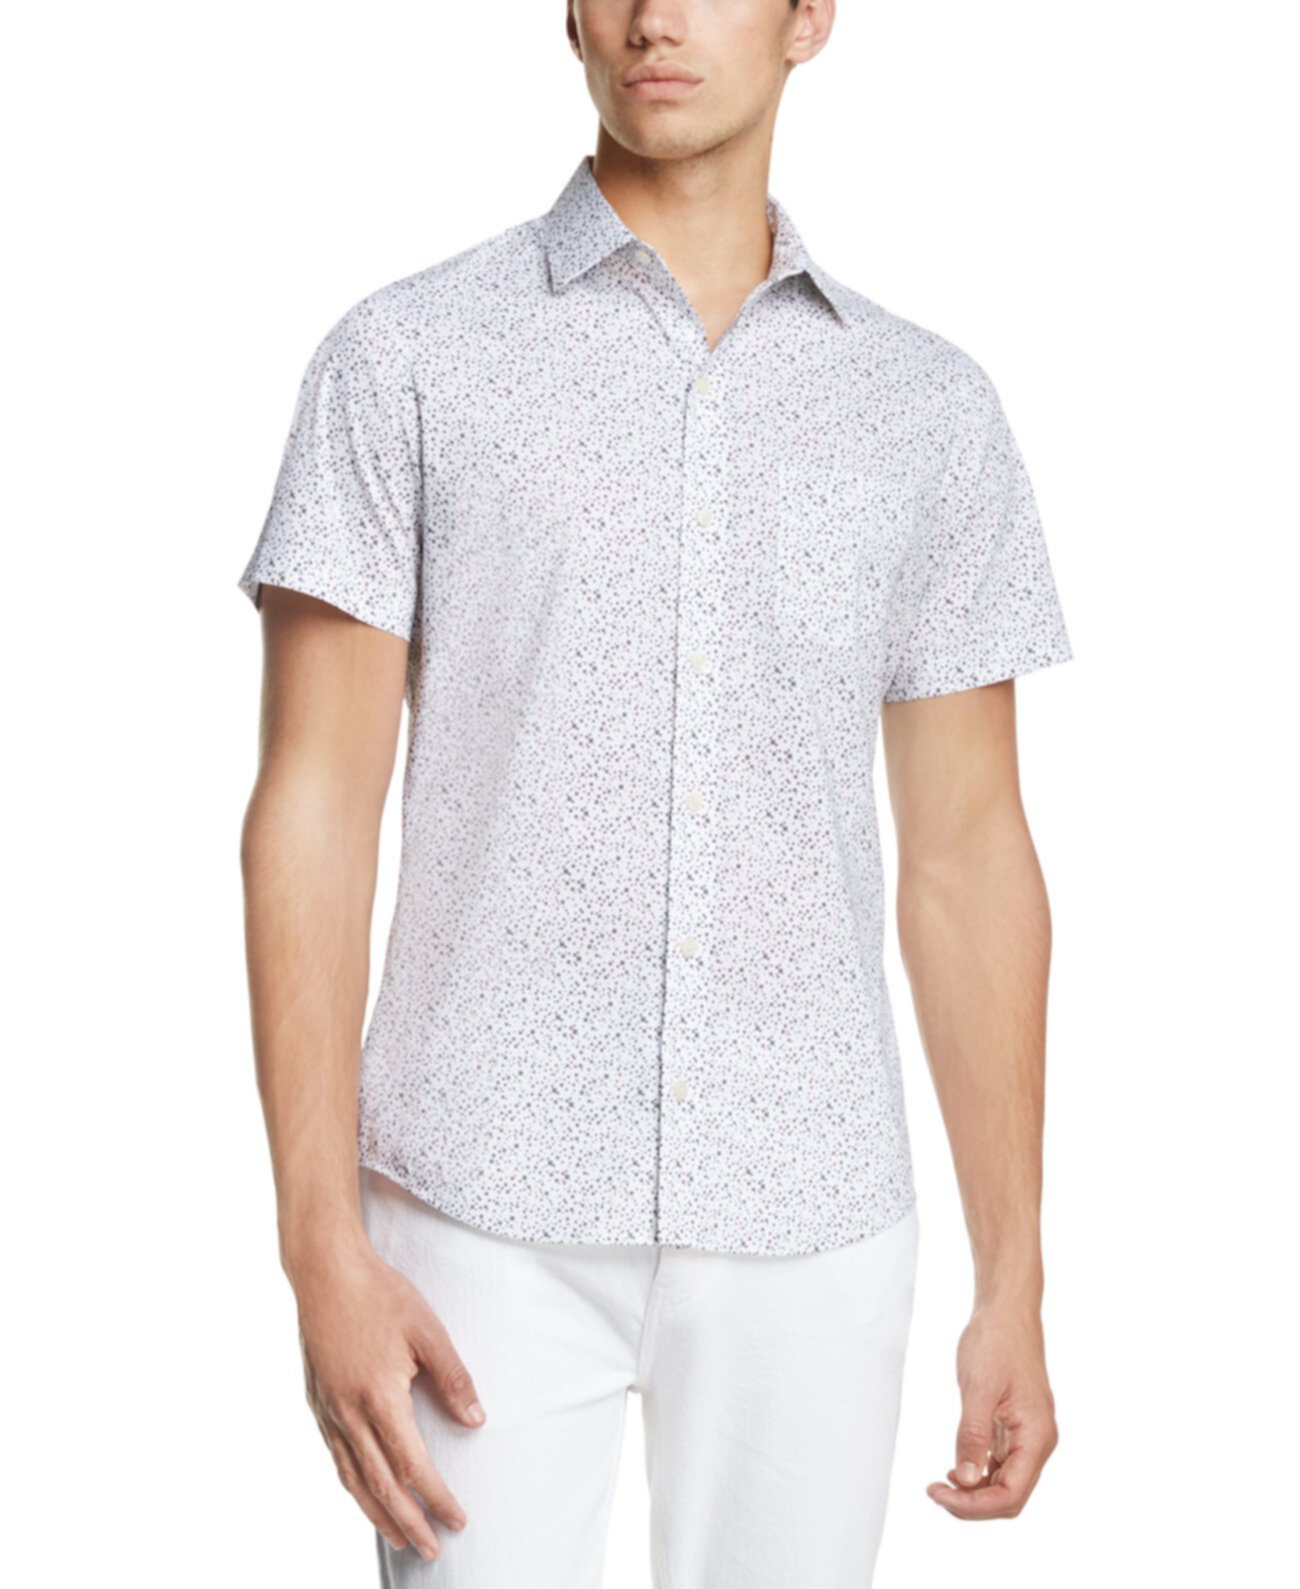 Мужская рубашка с короткими рукавами и эластичным французским принтом с квадратным принтом DKNY